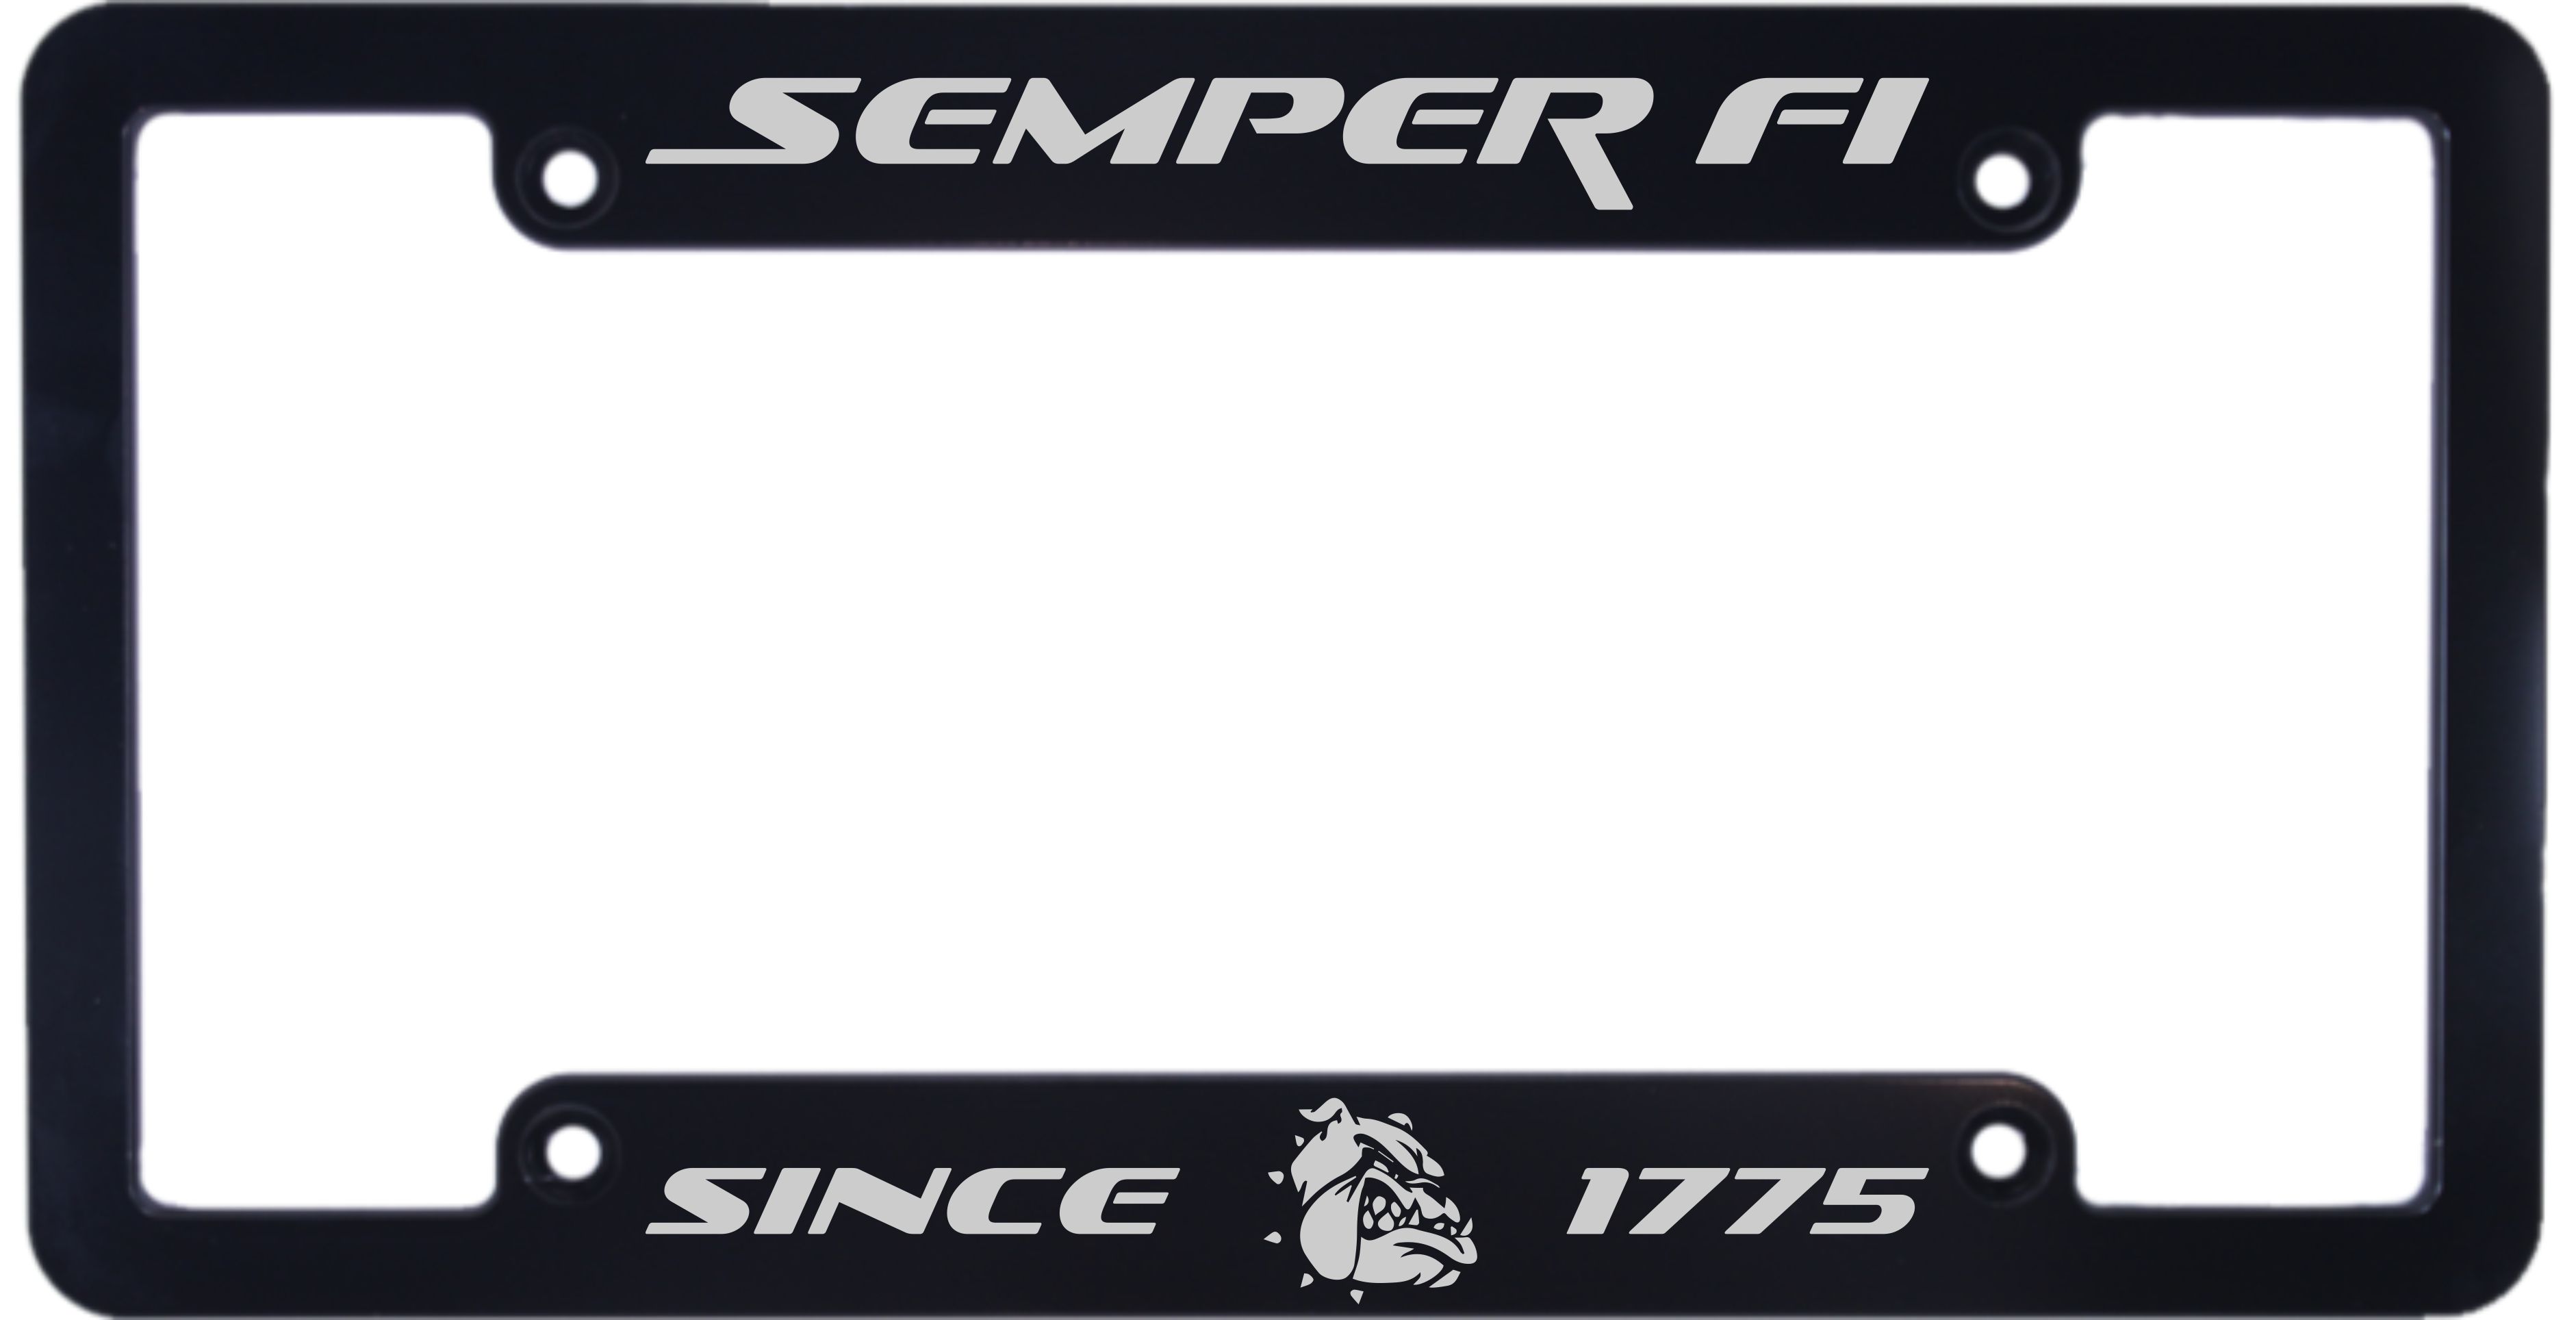 Semper Fi - Custom CNC Machined Aluminum License Plate Frame